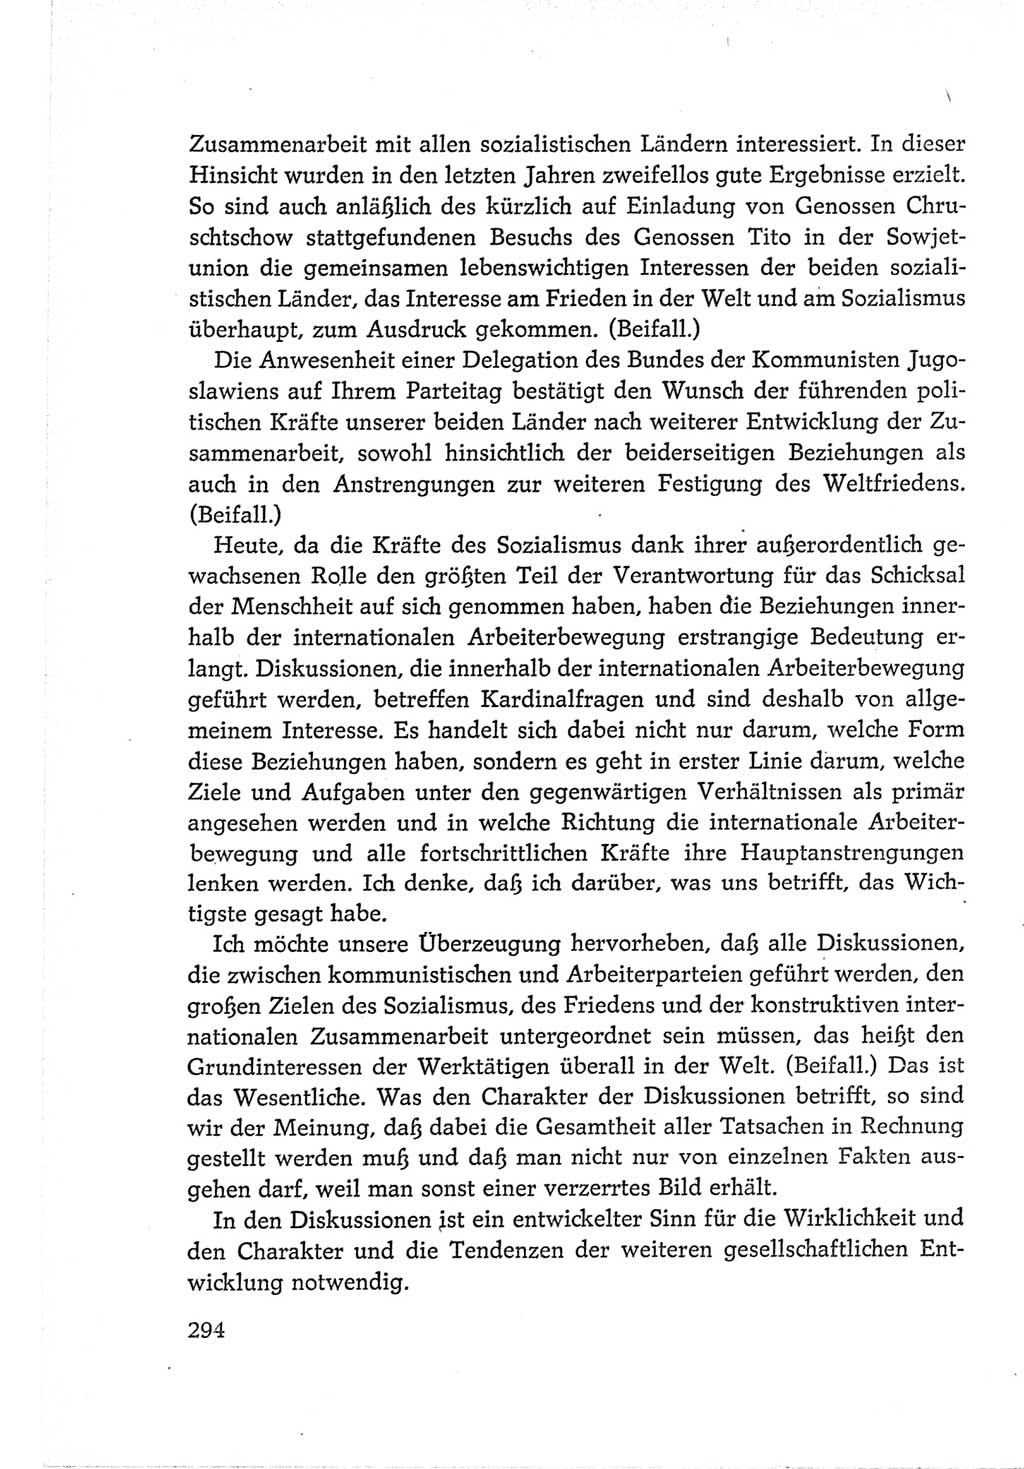 Protokoll der Verhandlungen des Ⅵ. Parteitages der Sozialistischen Einheitspartei Deutschlands (SED) [Deutsche Demokratische Republik (DDR)] 1963, Band Ⅱ, Seite 294 (Prot. Verh. Ⅵ. PT SED DDR 1963, Bd. Ⅱ, S. 294)